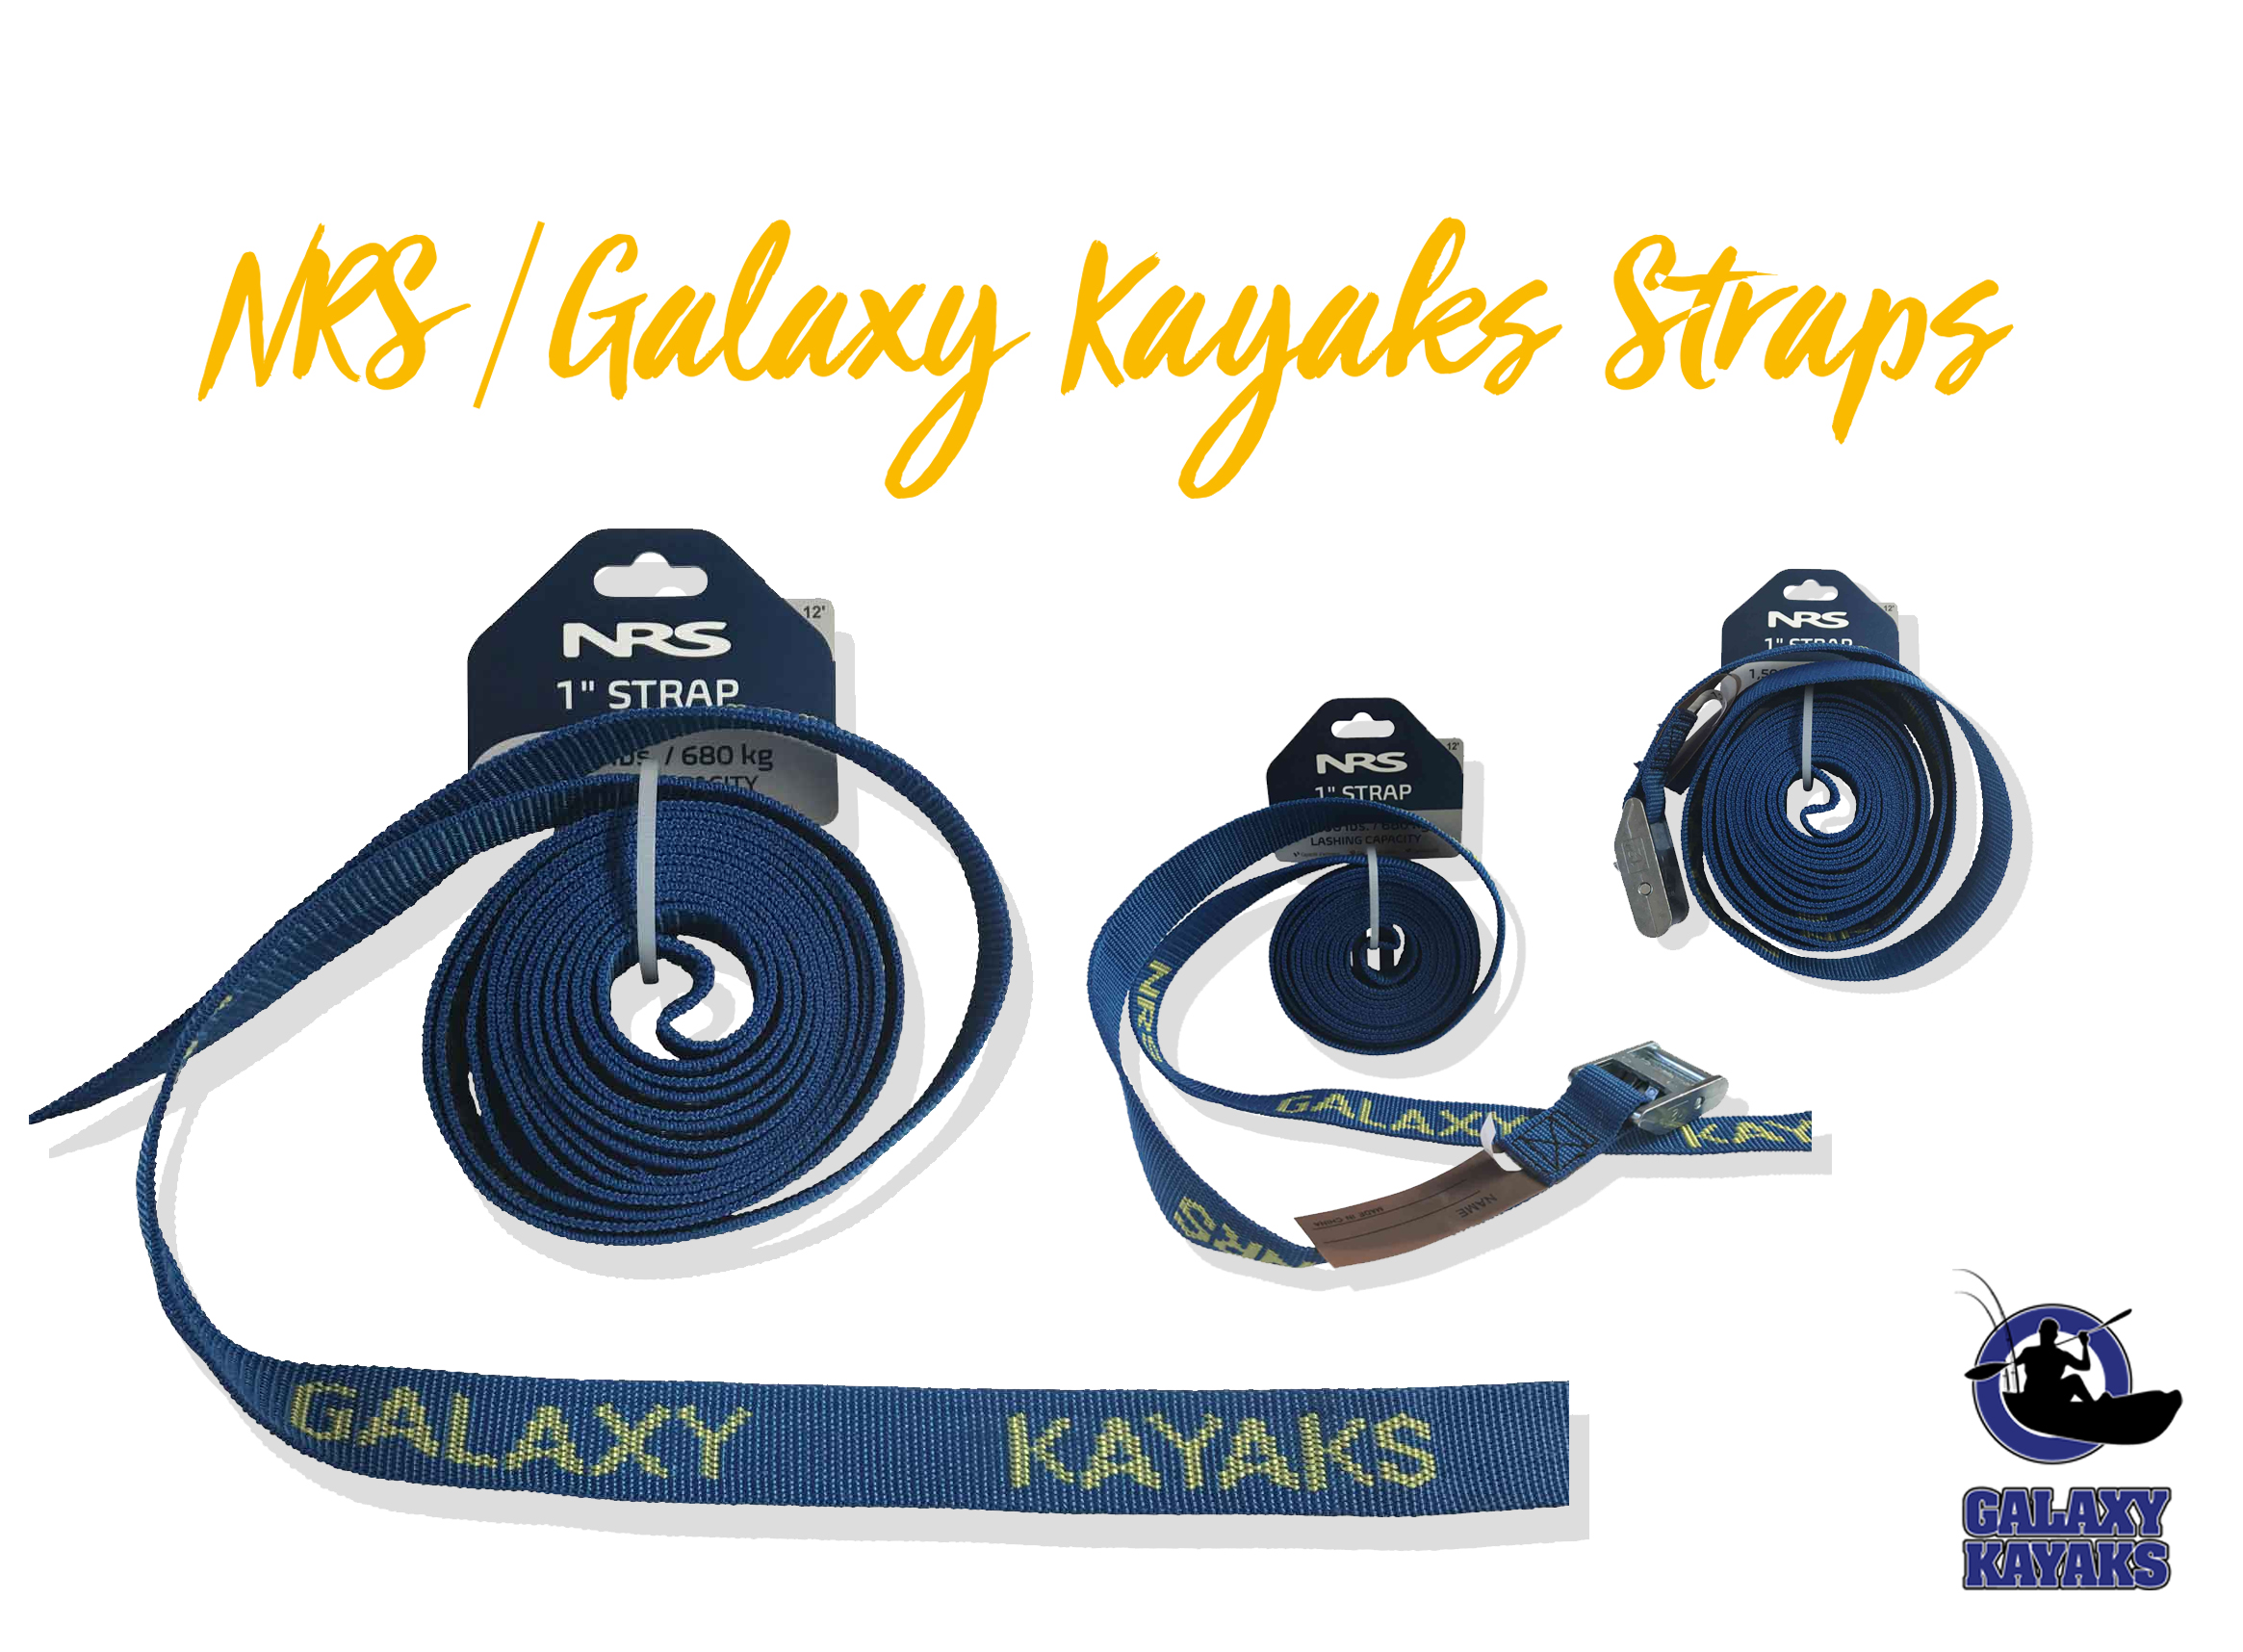 NRS/Galaxy Kayaks Straps